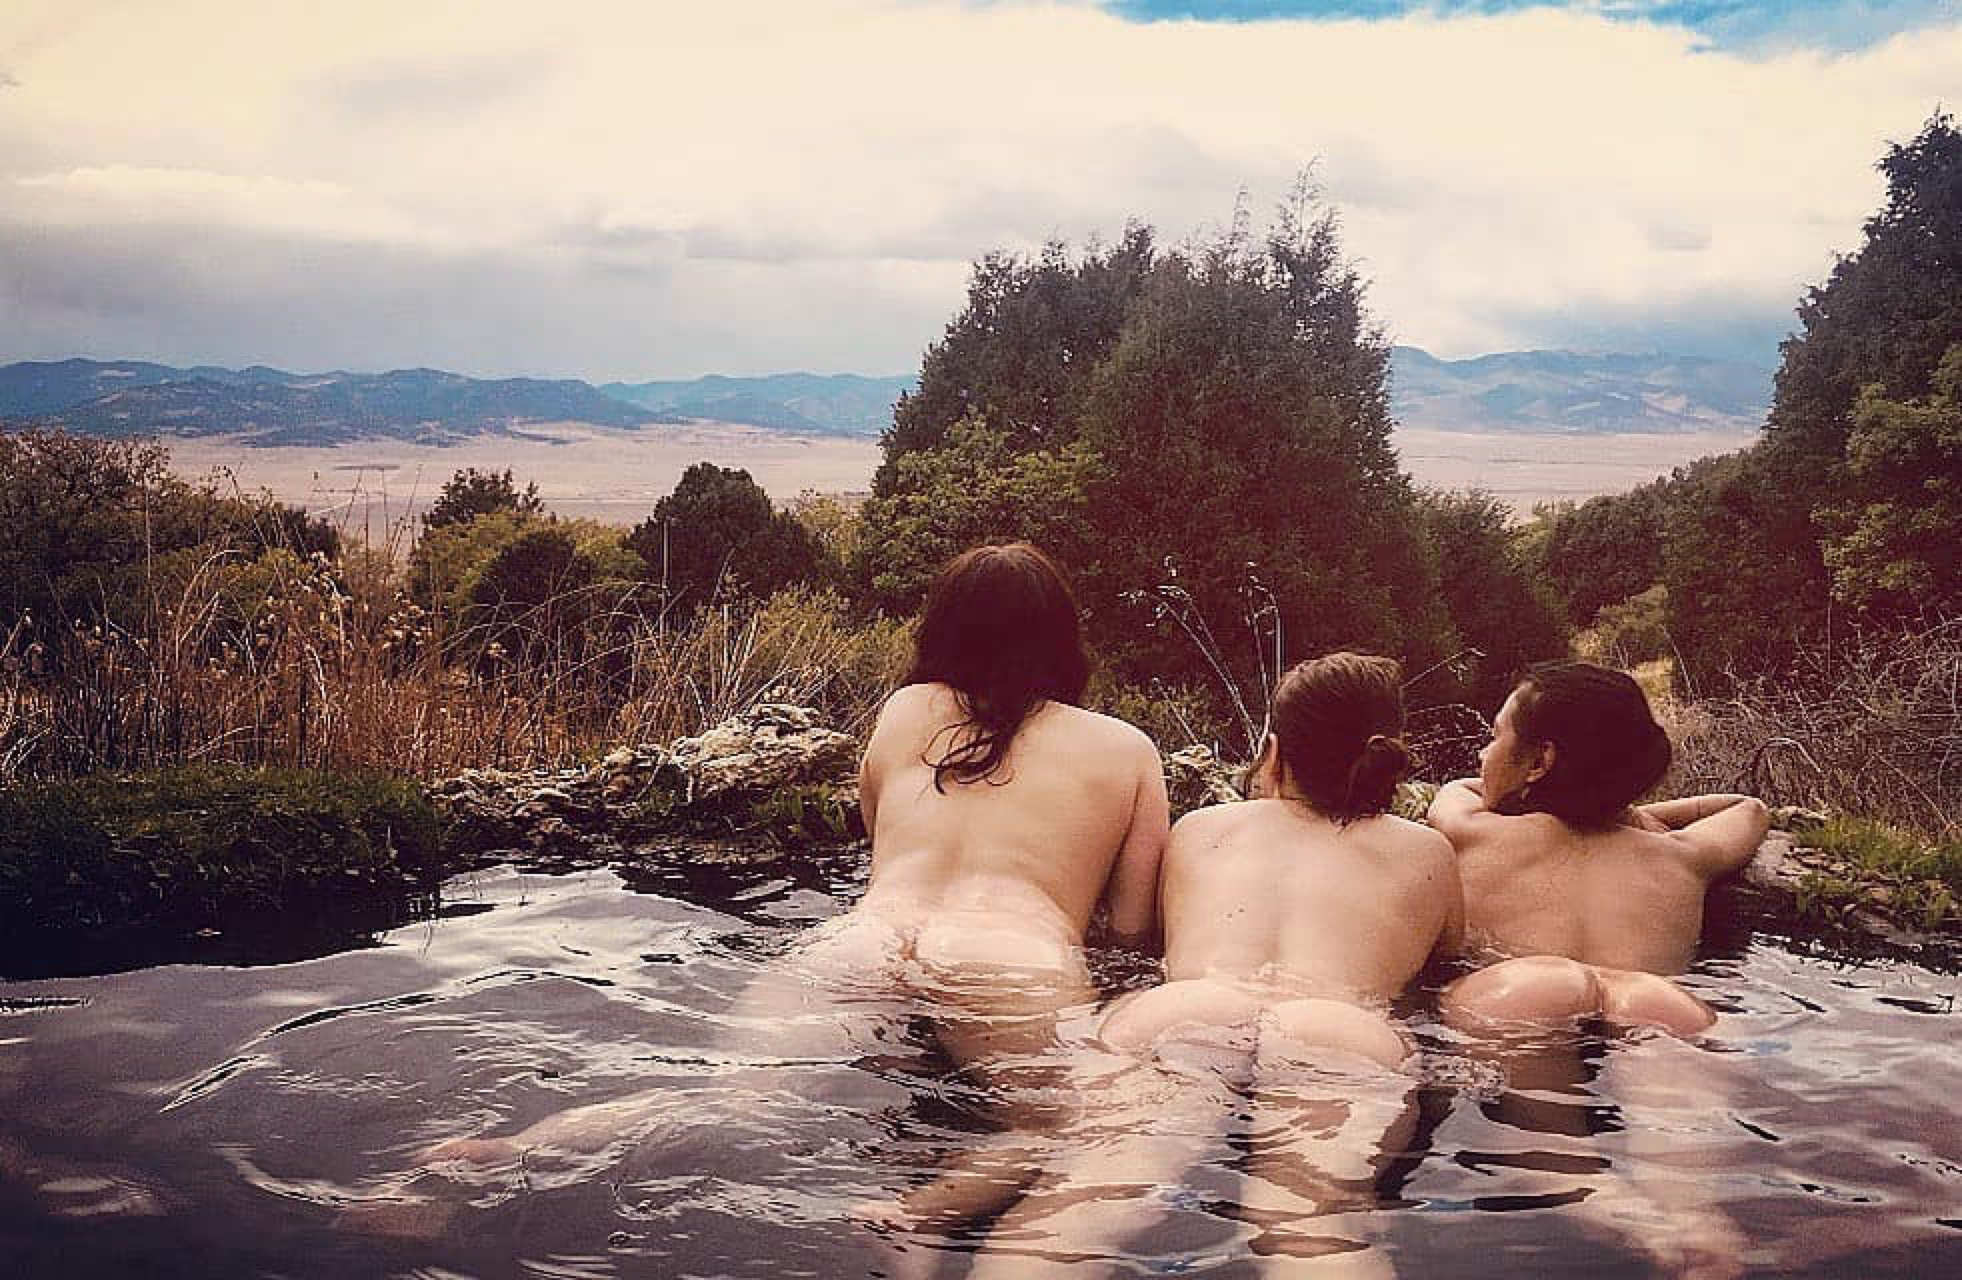 Colorado Porn - Colorado Hot Springs Porn Pic - EPORNER